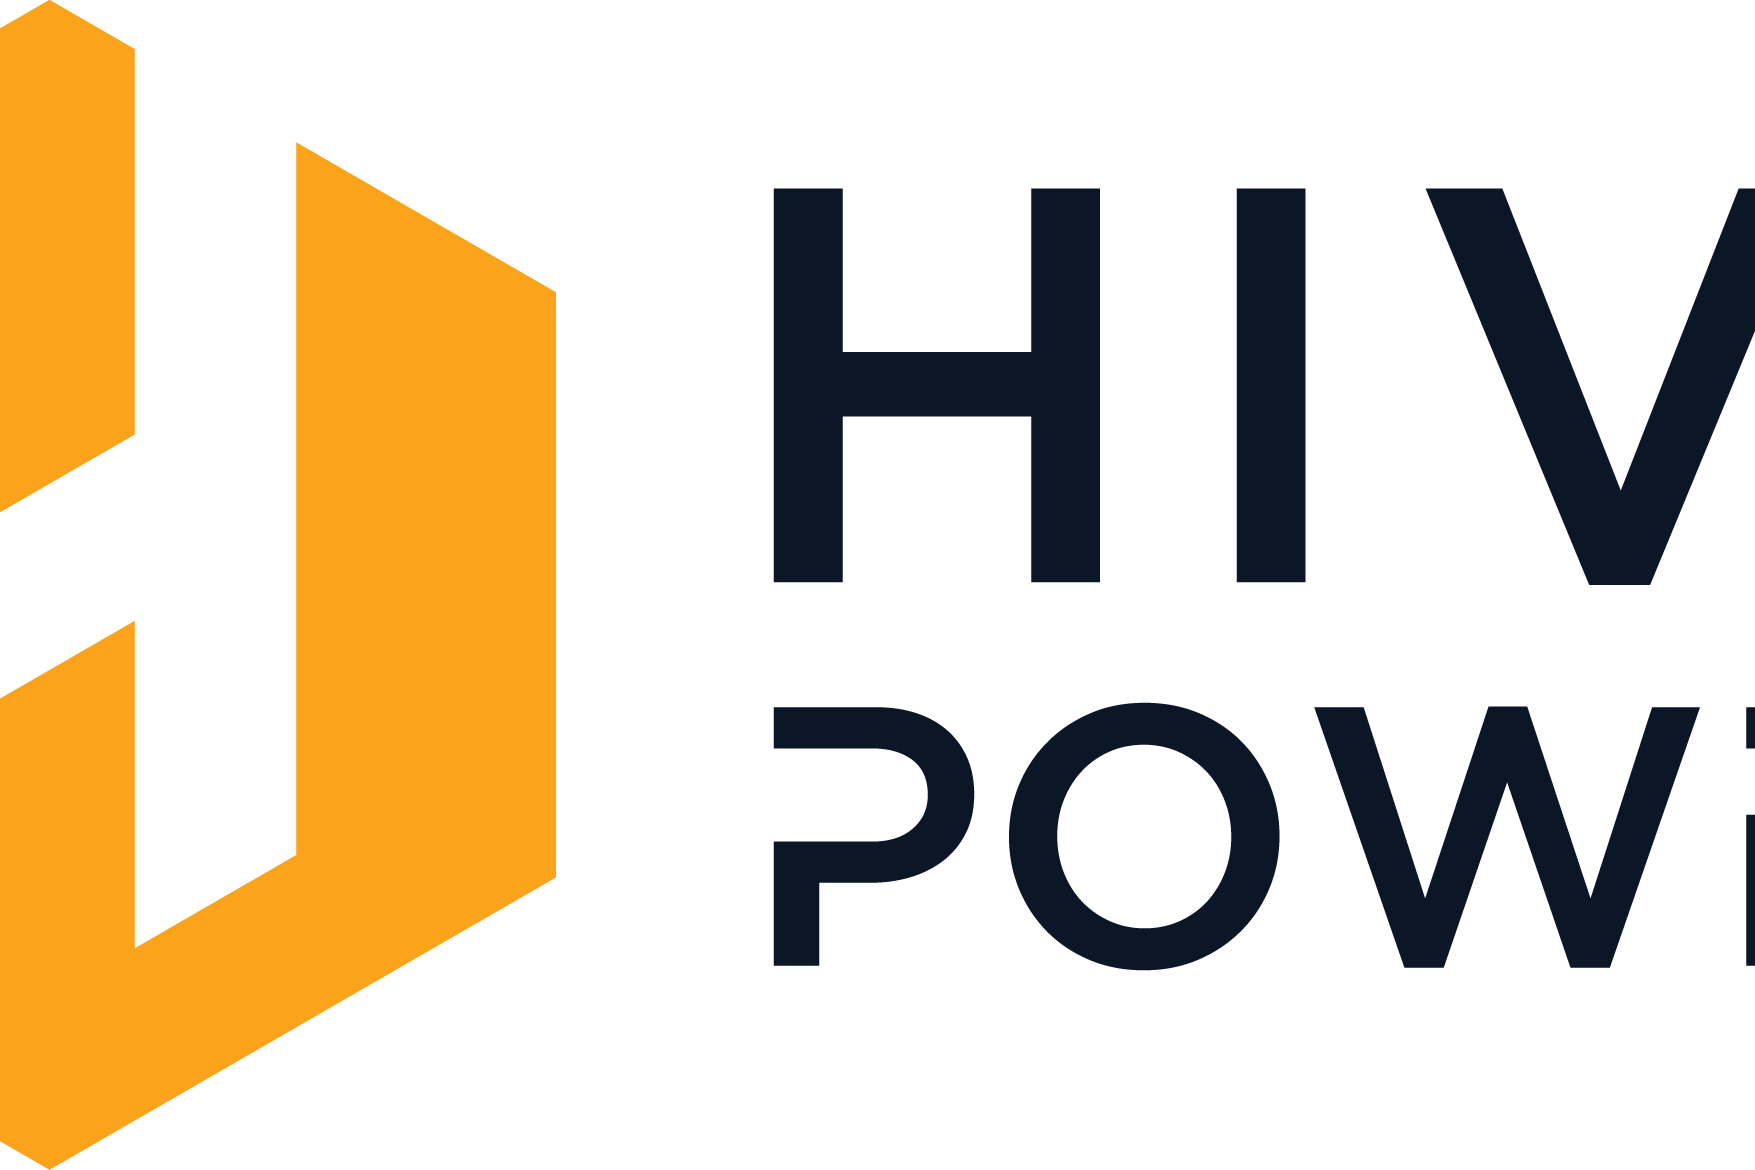 Smart Grid: il logotipo Hive Power